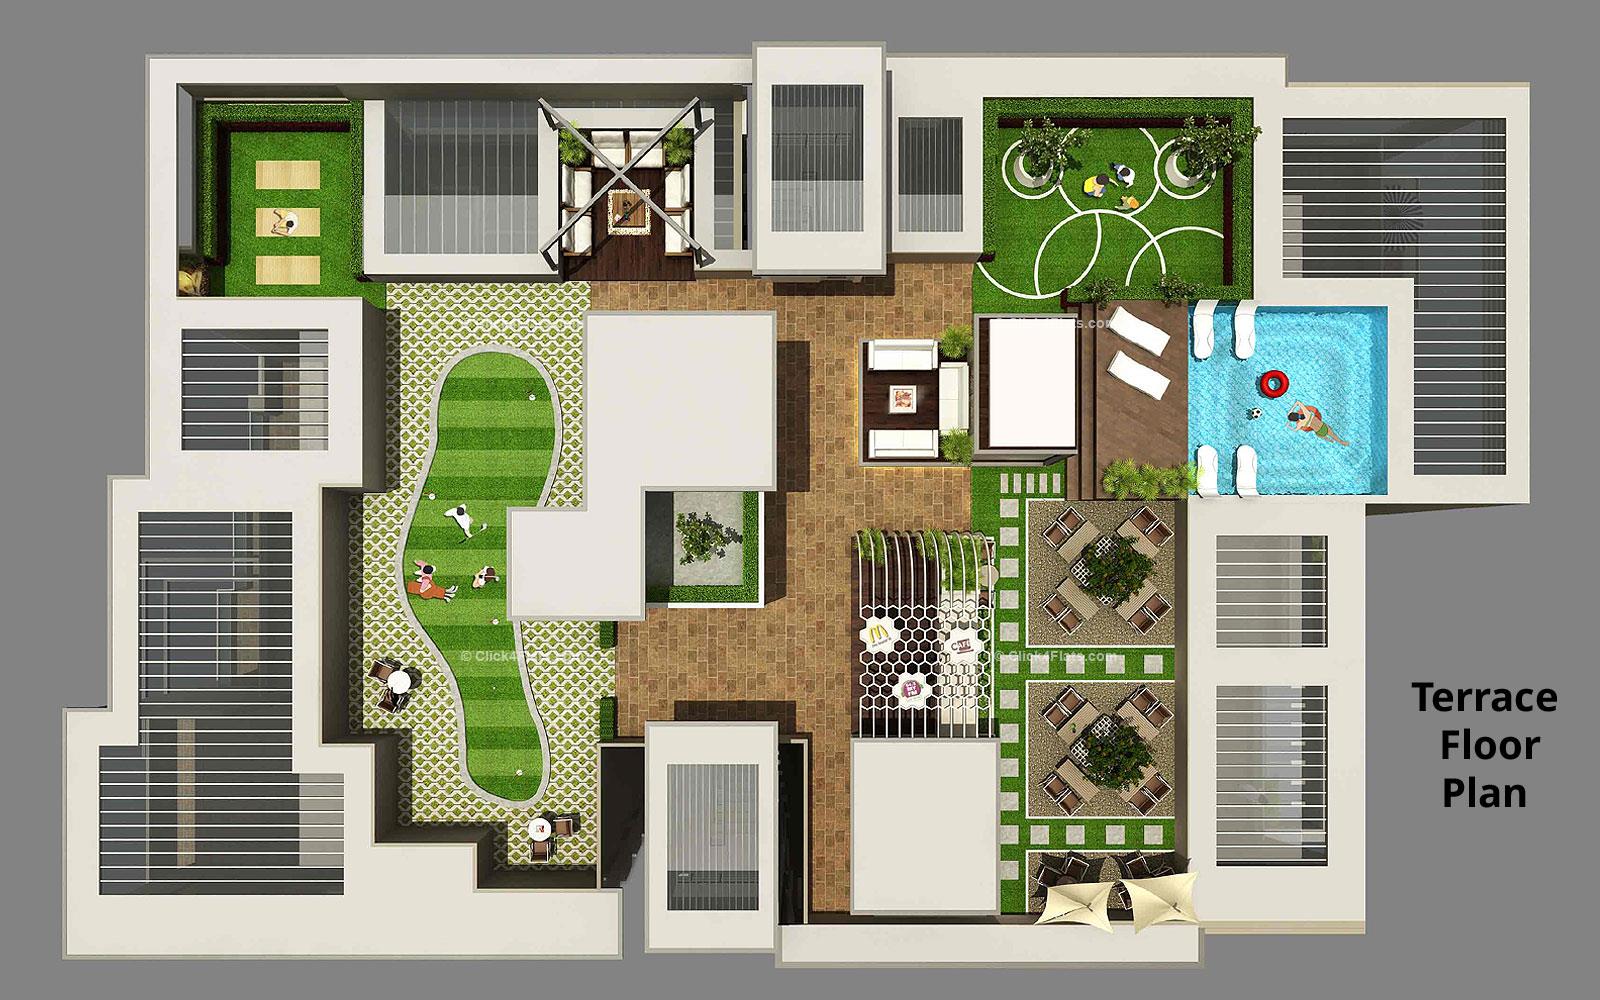 The Park Central Terrace Floor Plan